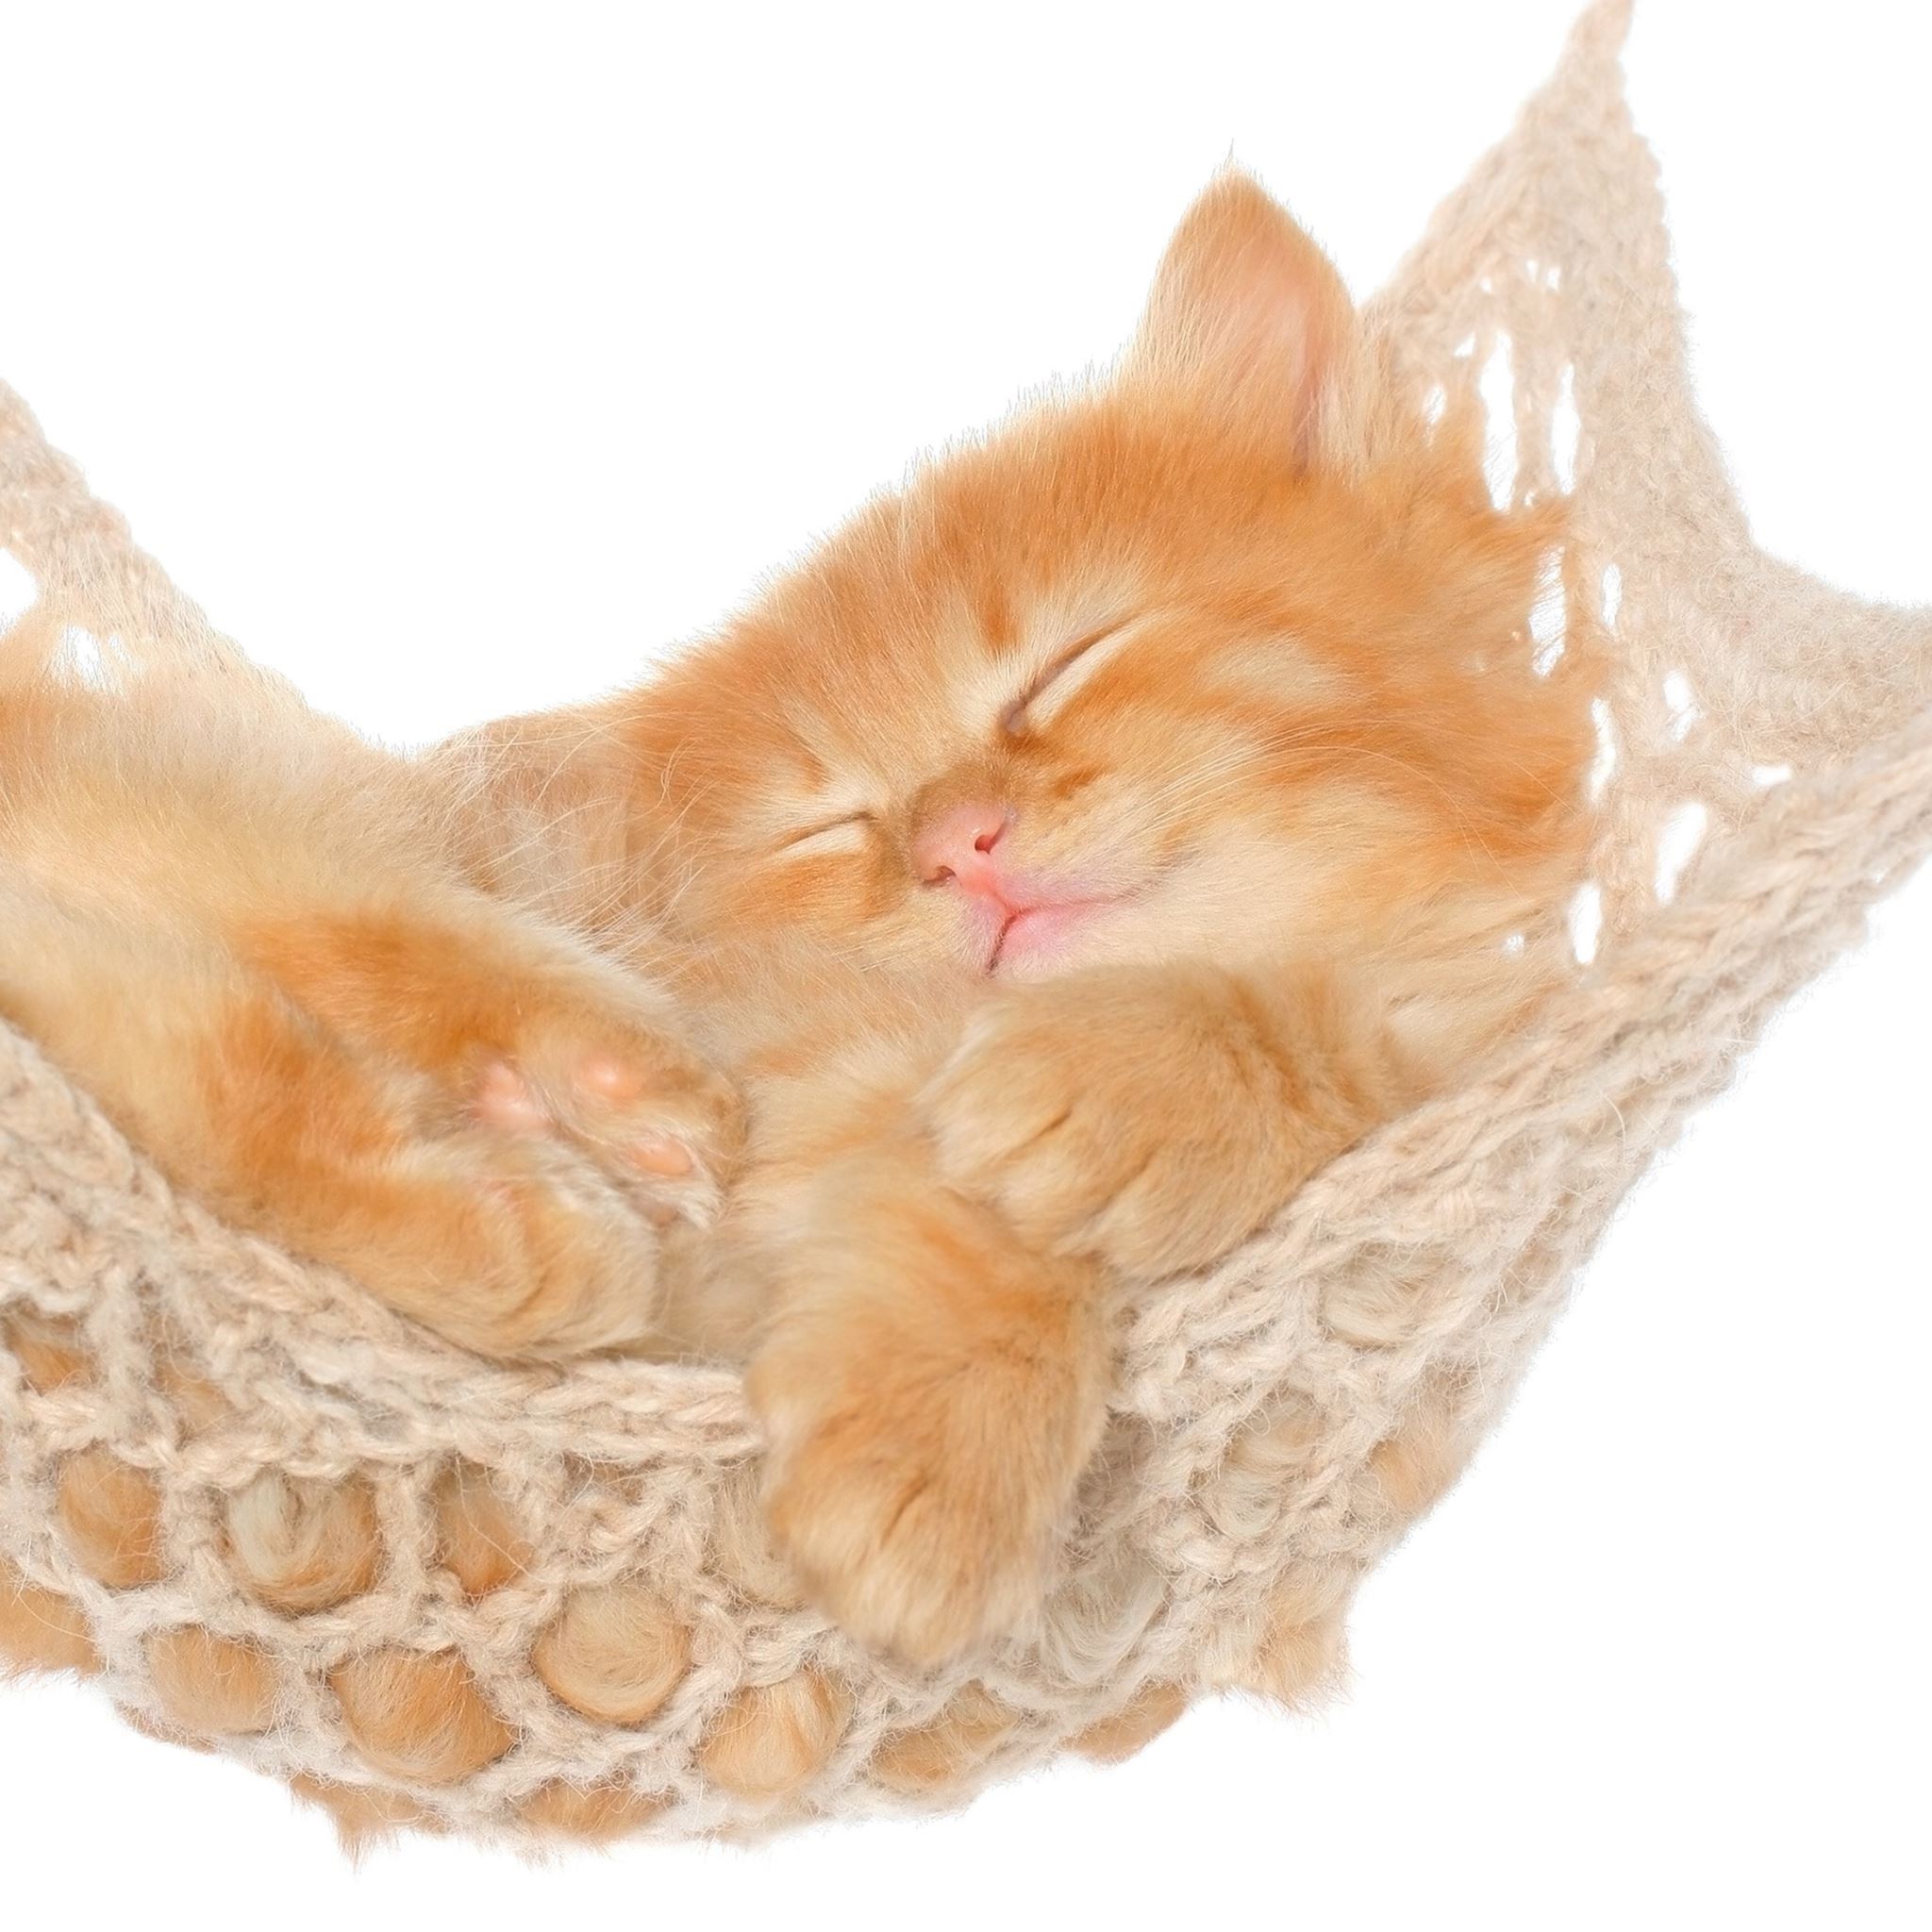 Cat Hammock Kitten Red Fluffy iPad Air wallpaper 